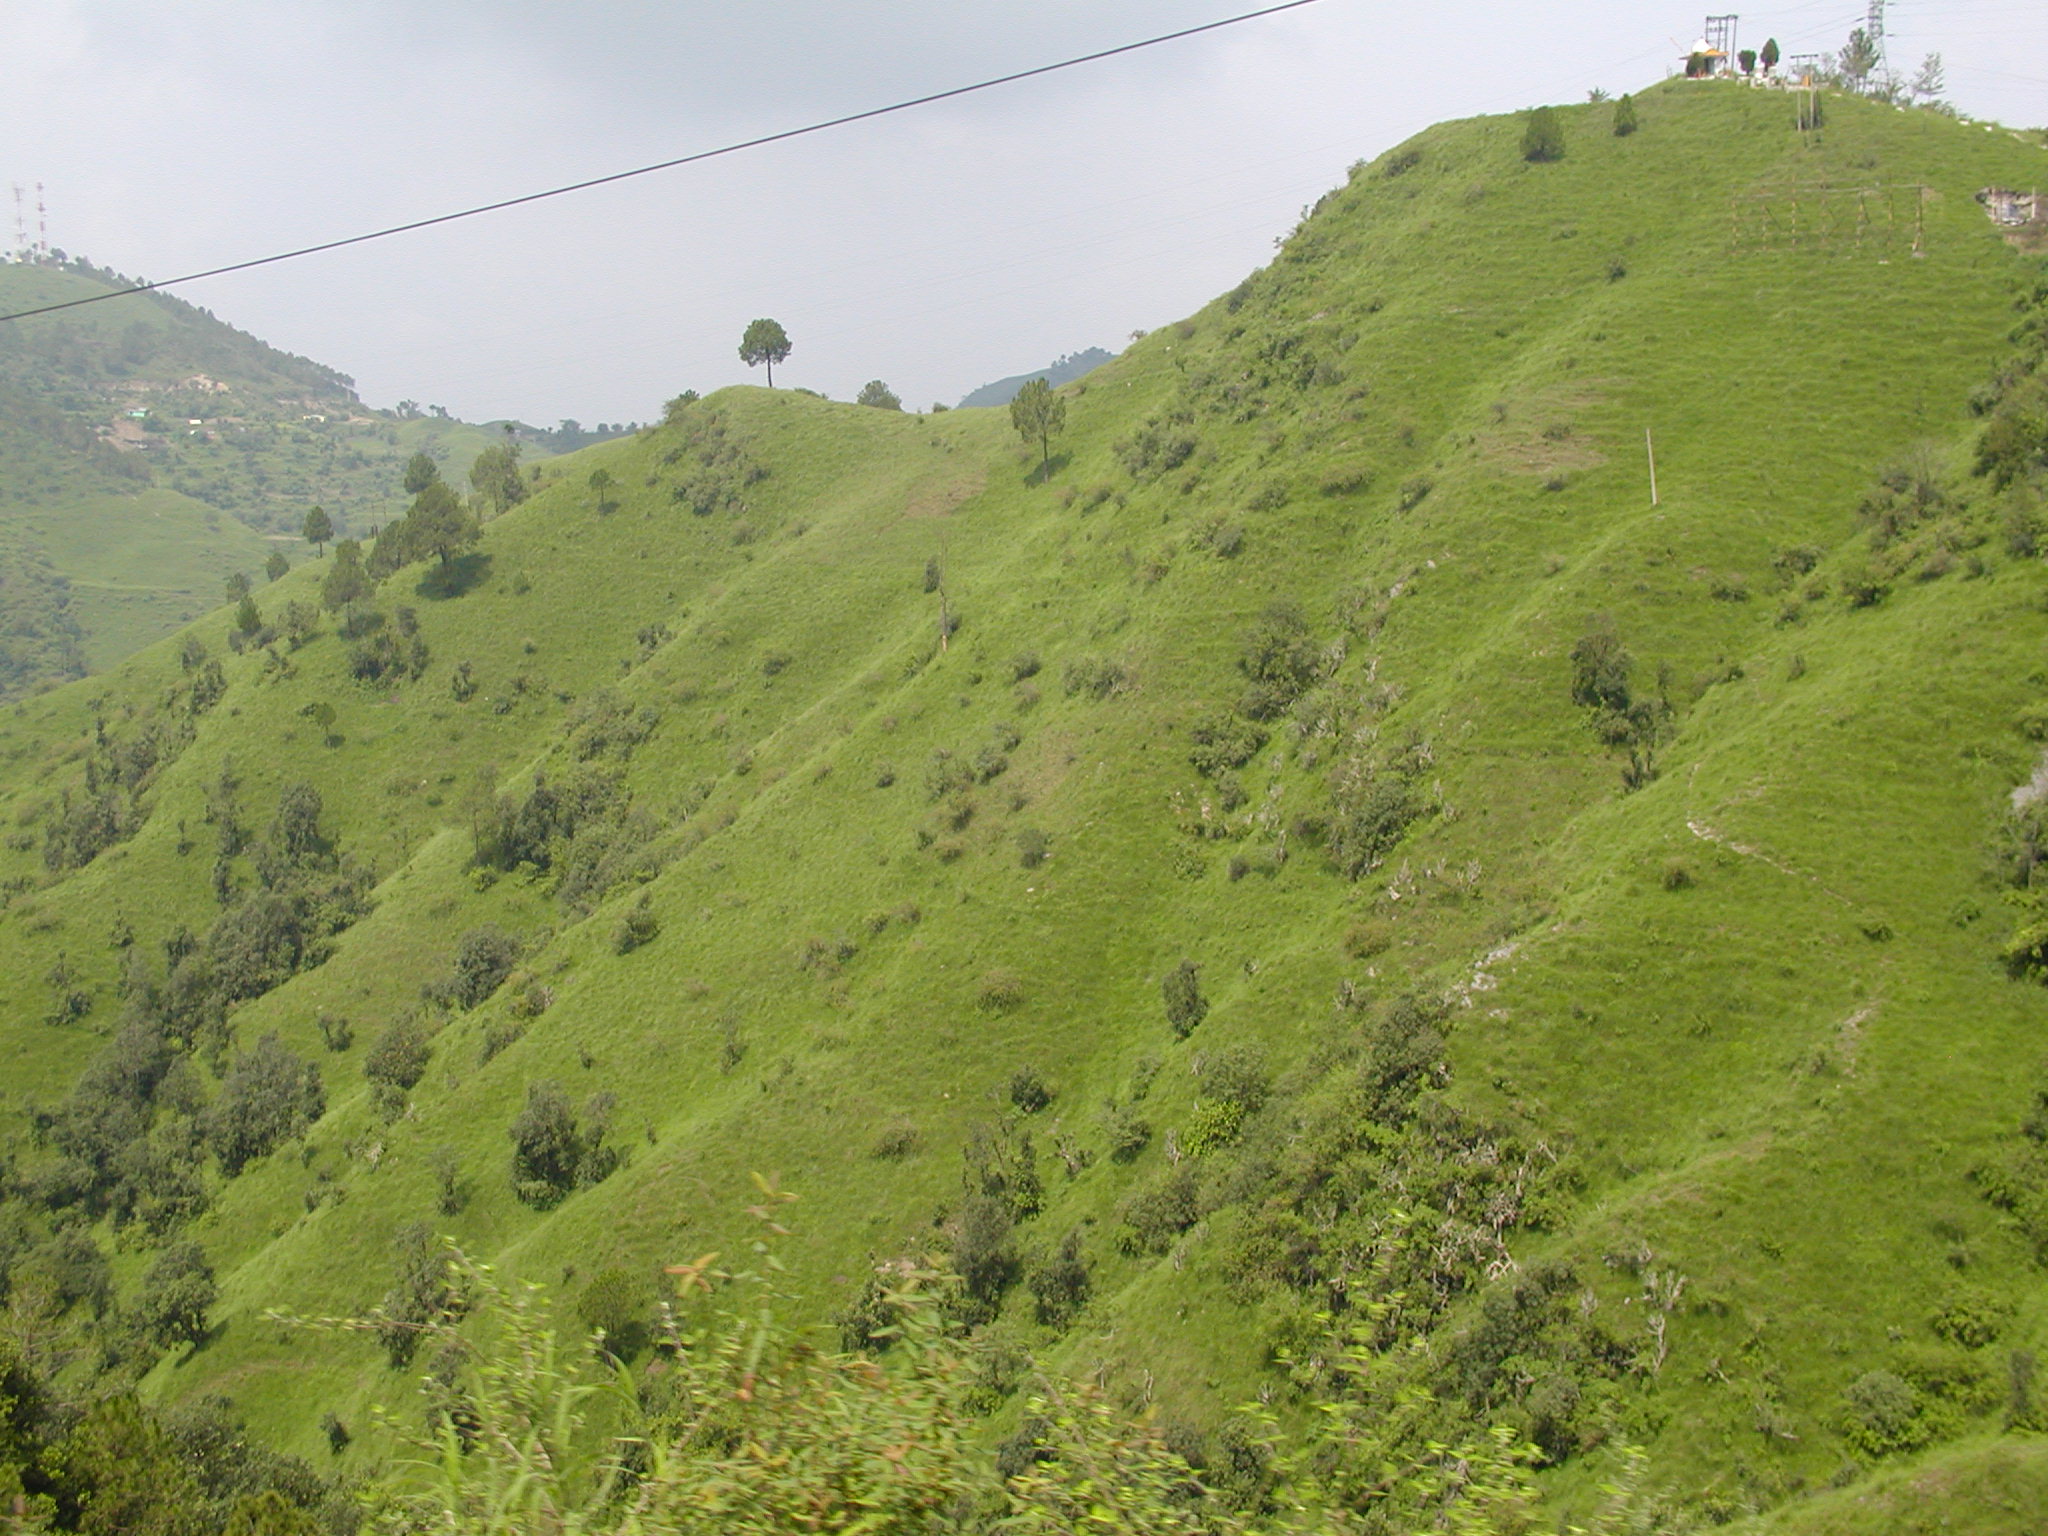 The green mountains around Shimla